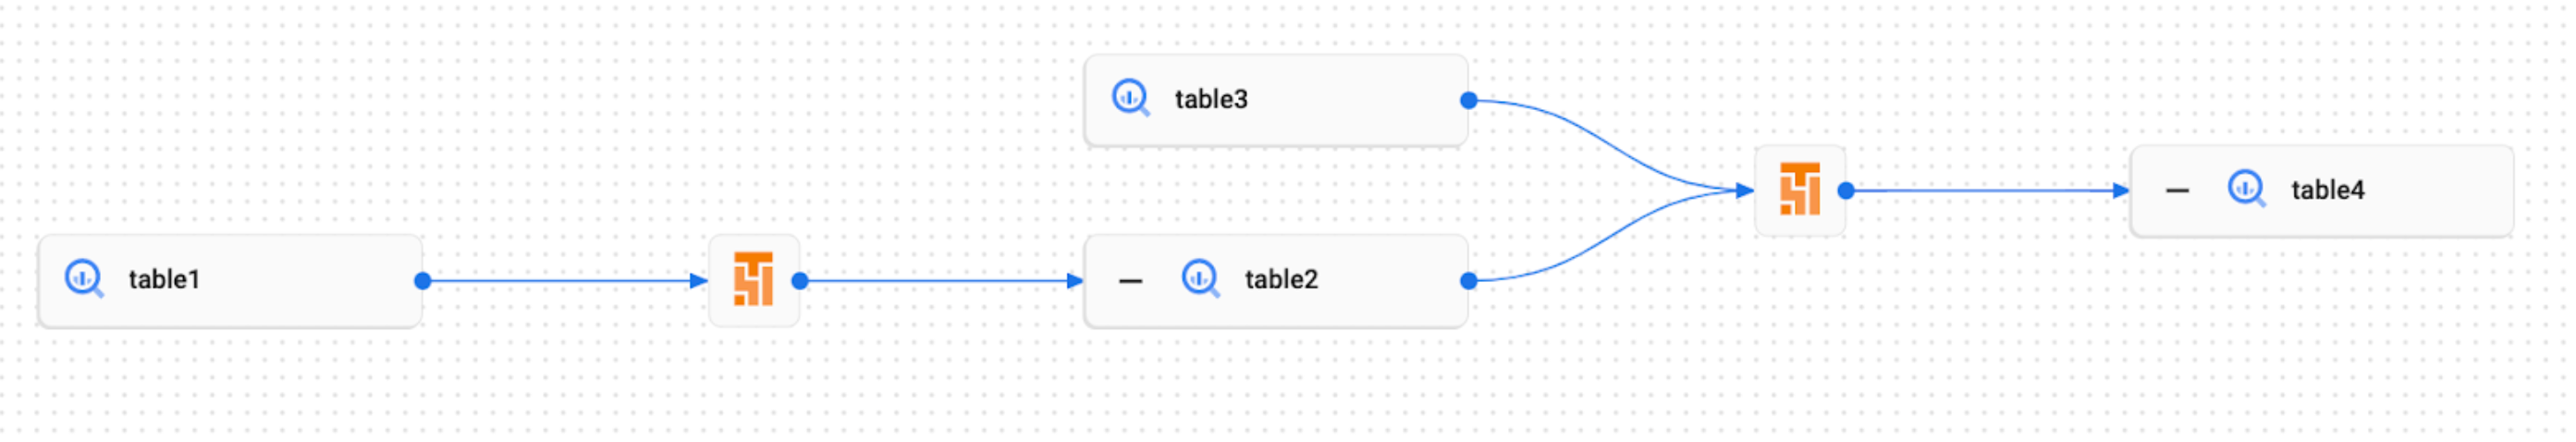 Exemplo de gráfico de linhagem para eventos personalizados na interface do Dataplex.